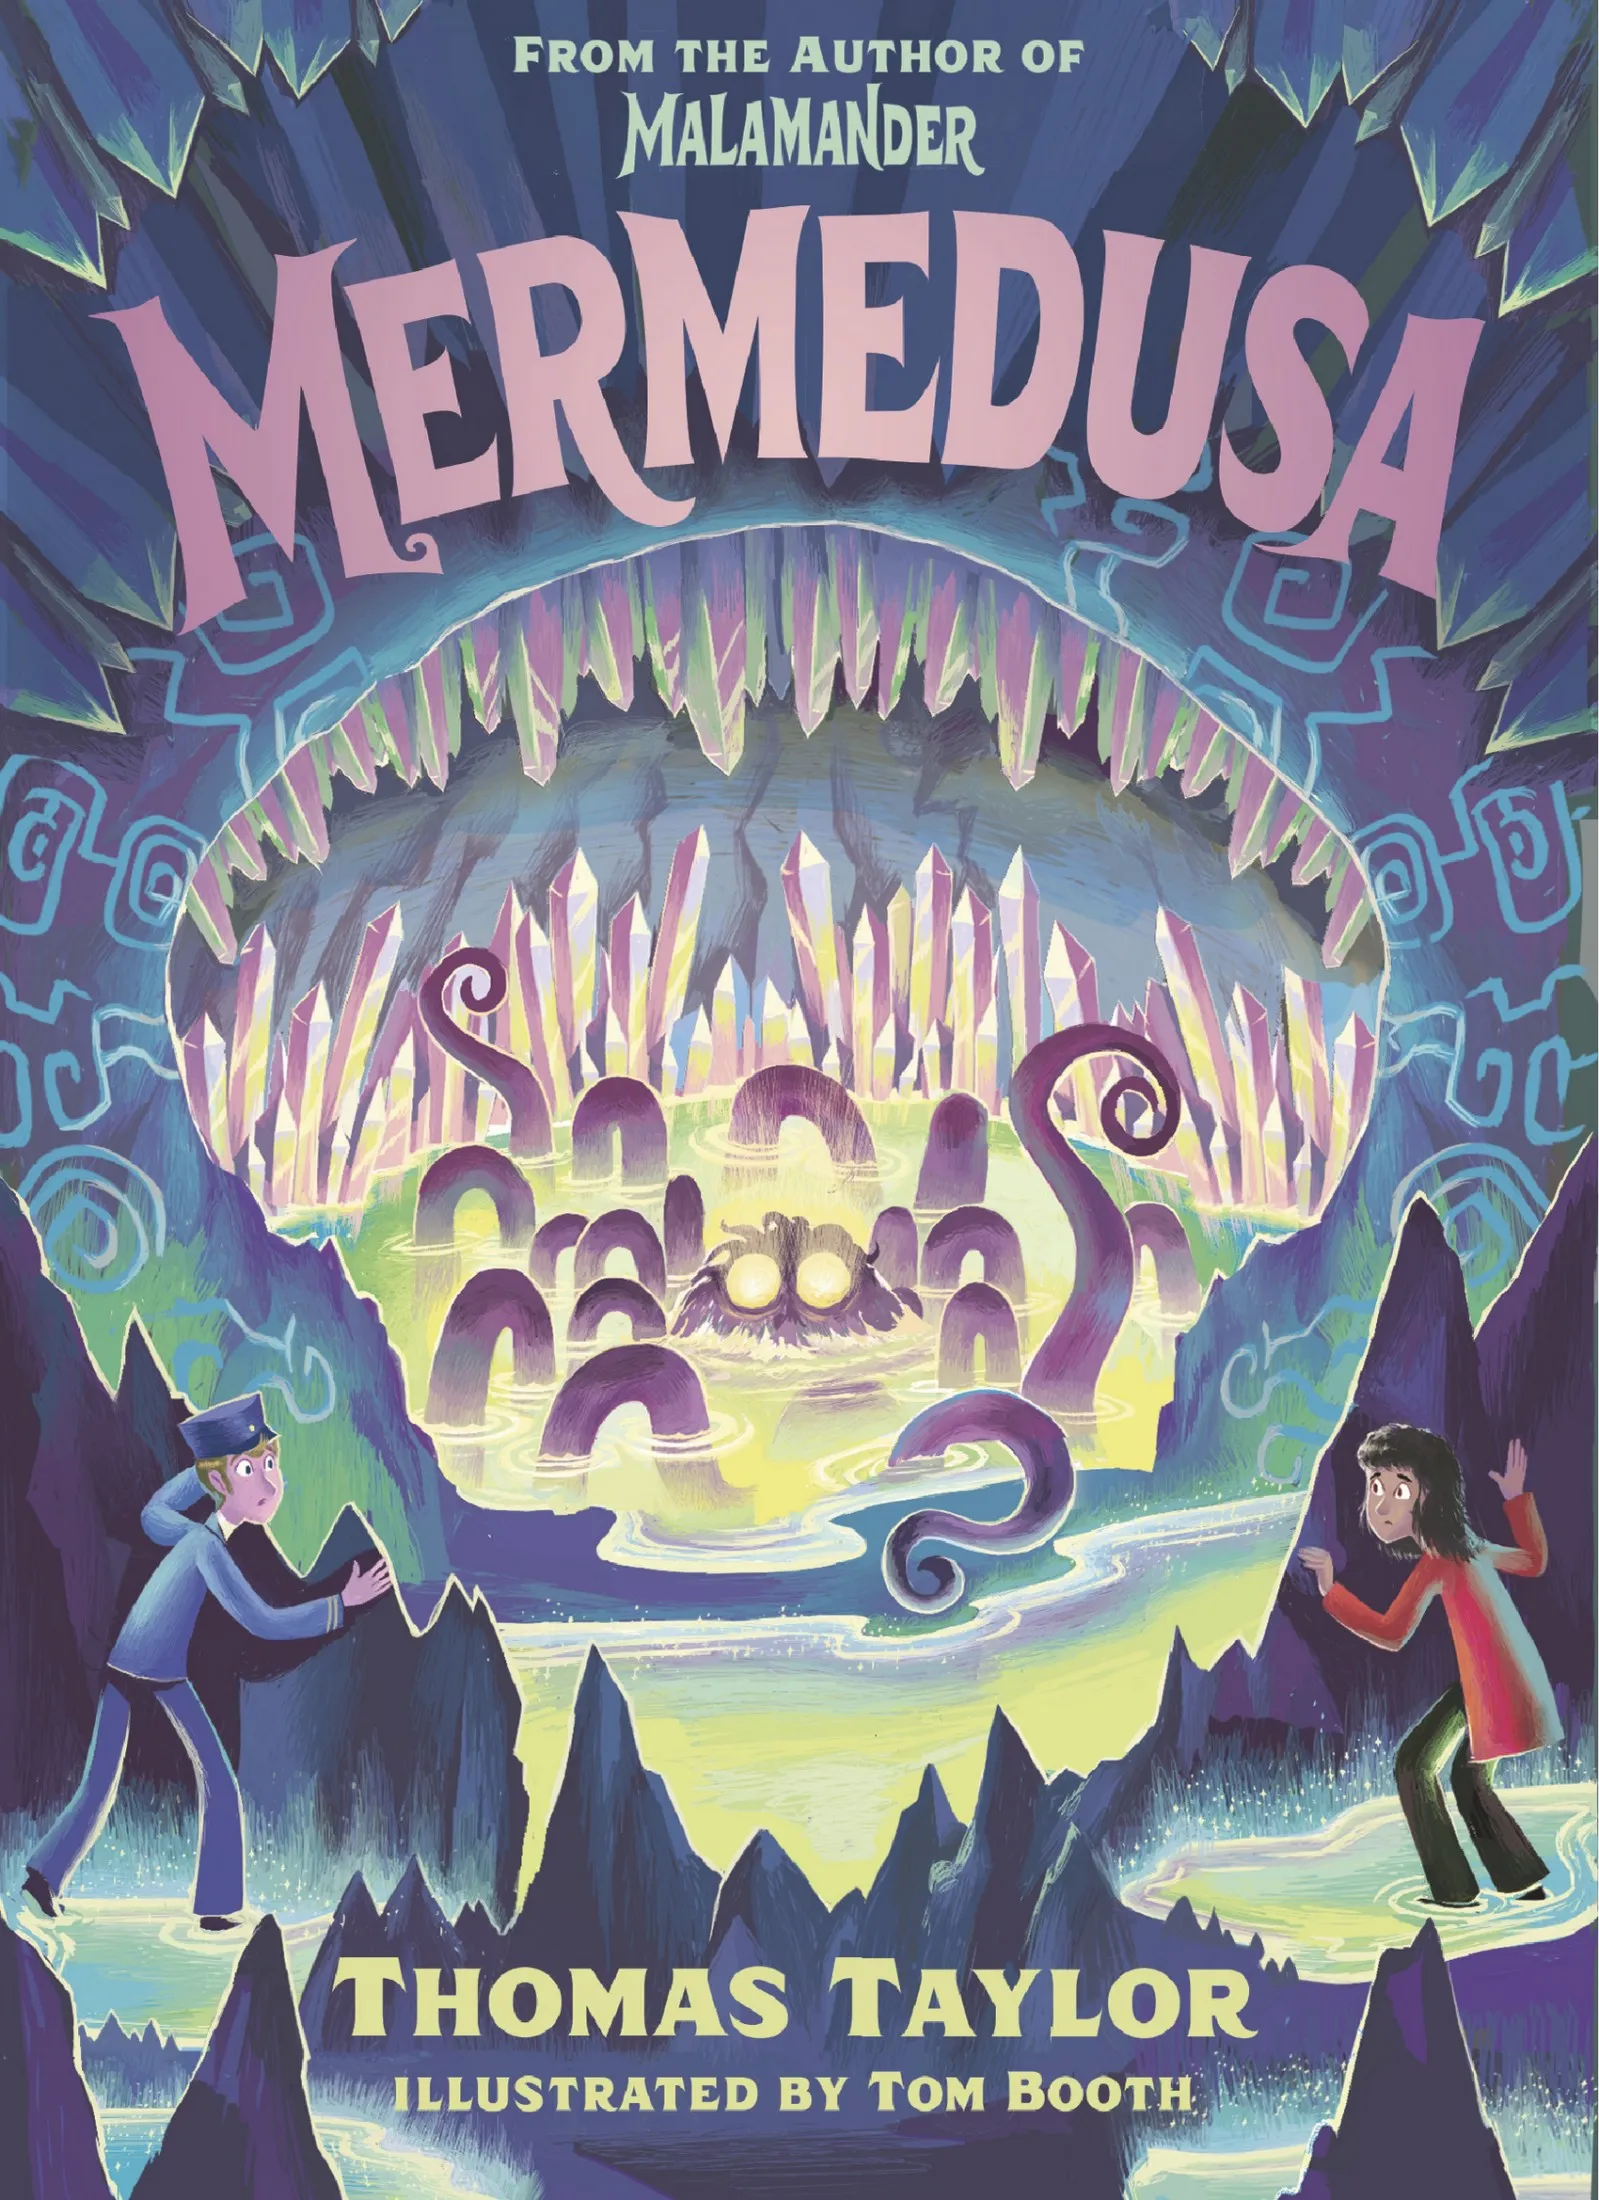 Mermedusa (The Legends of Eerie-on-Sea #5)